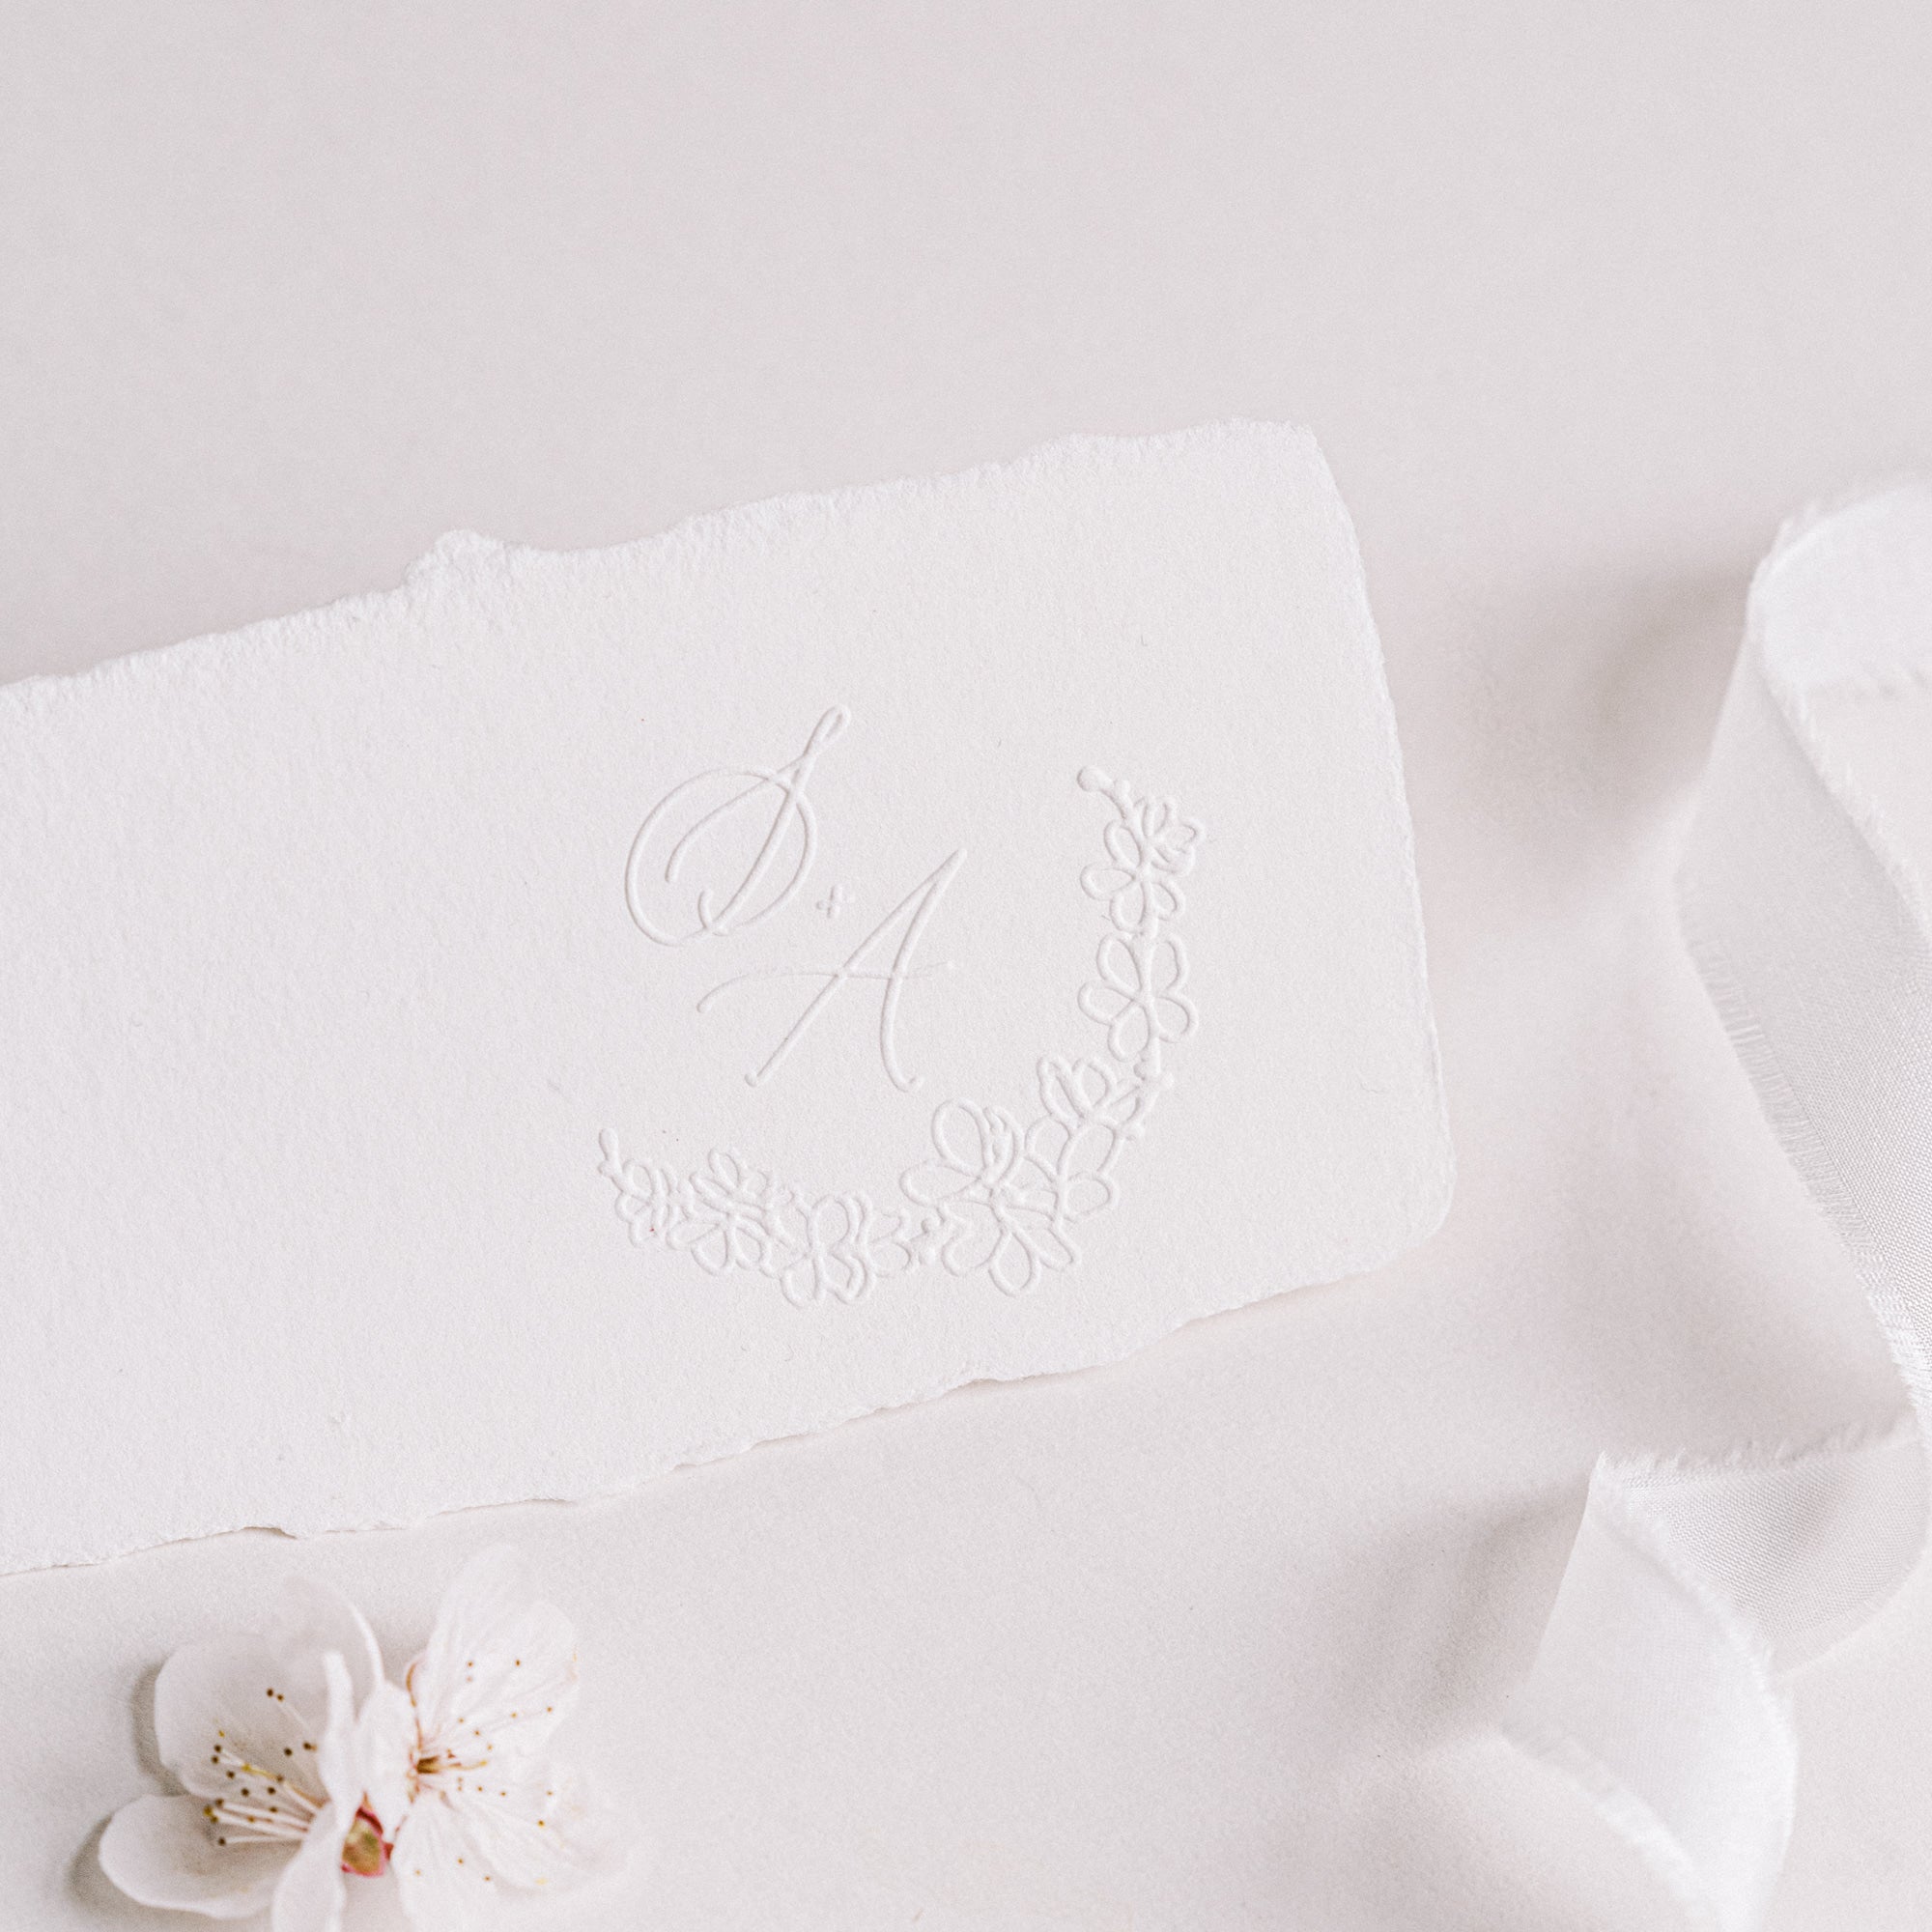 Emika Cherry Blossom Botanical Calligraphy Script Monogram Embosser for Embossed Fine Art Wedding Invitation Envelopes, Menus & Packaging | Heirloom Seals